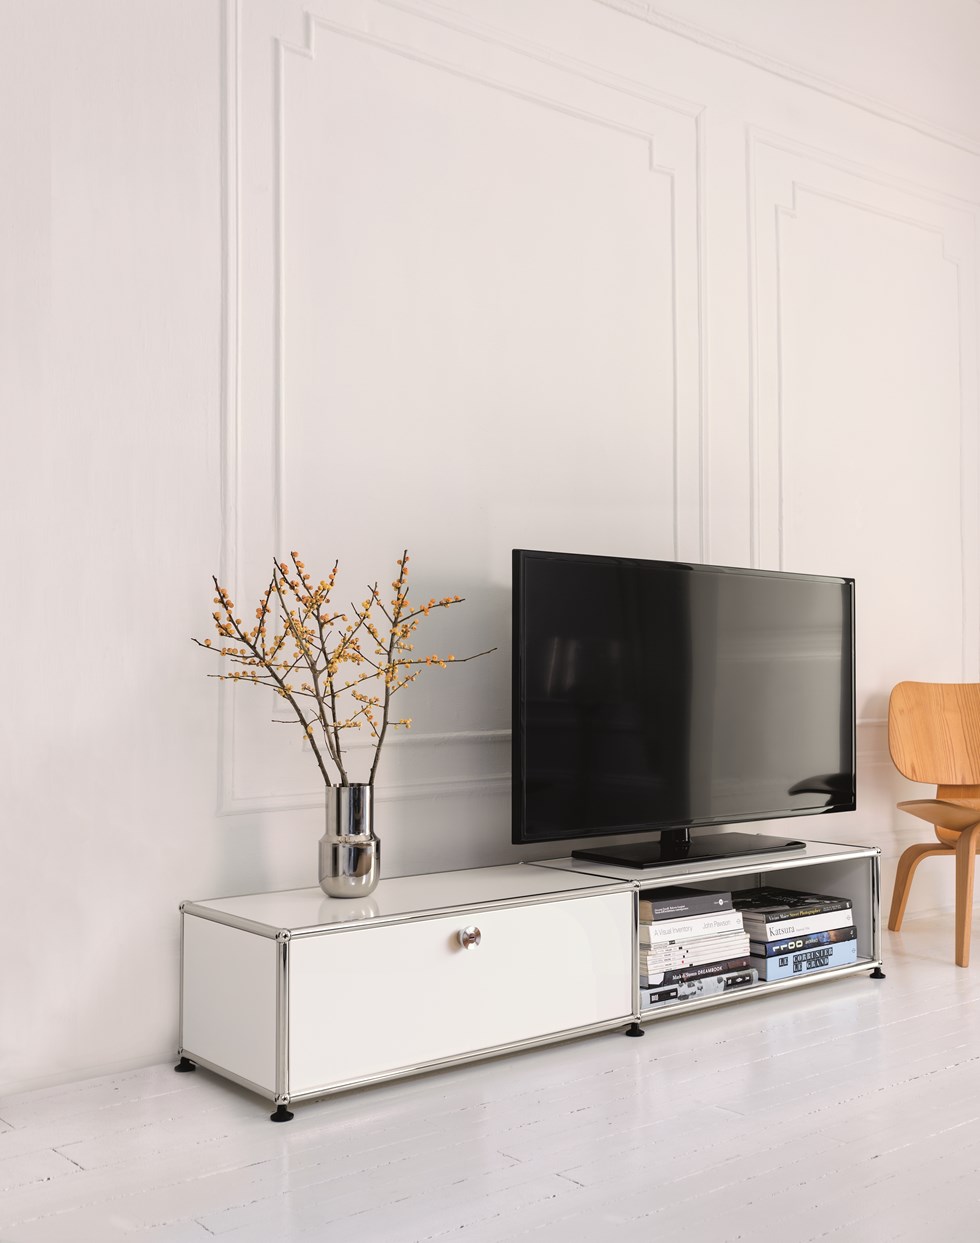 Mueble de TV y almacenamiento blanco USM Haller en un salón blanco contemporáneo